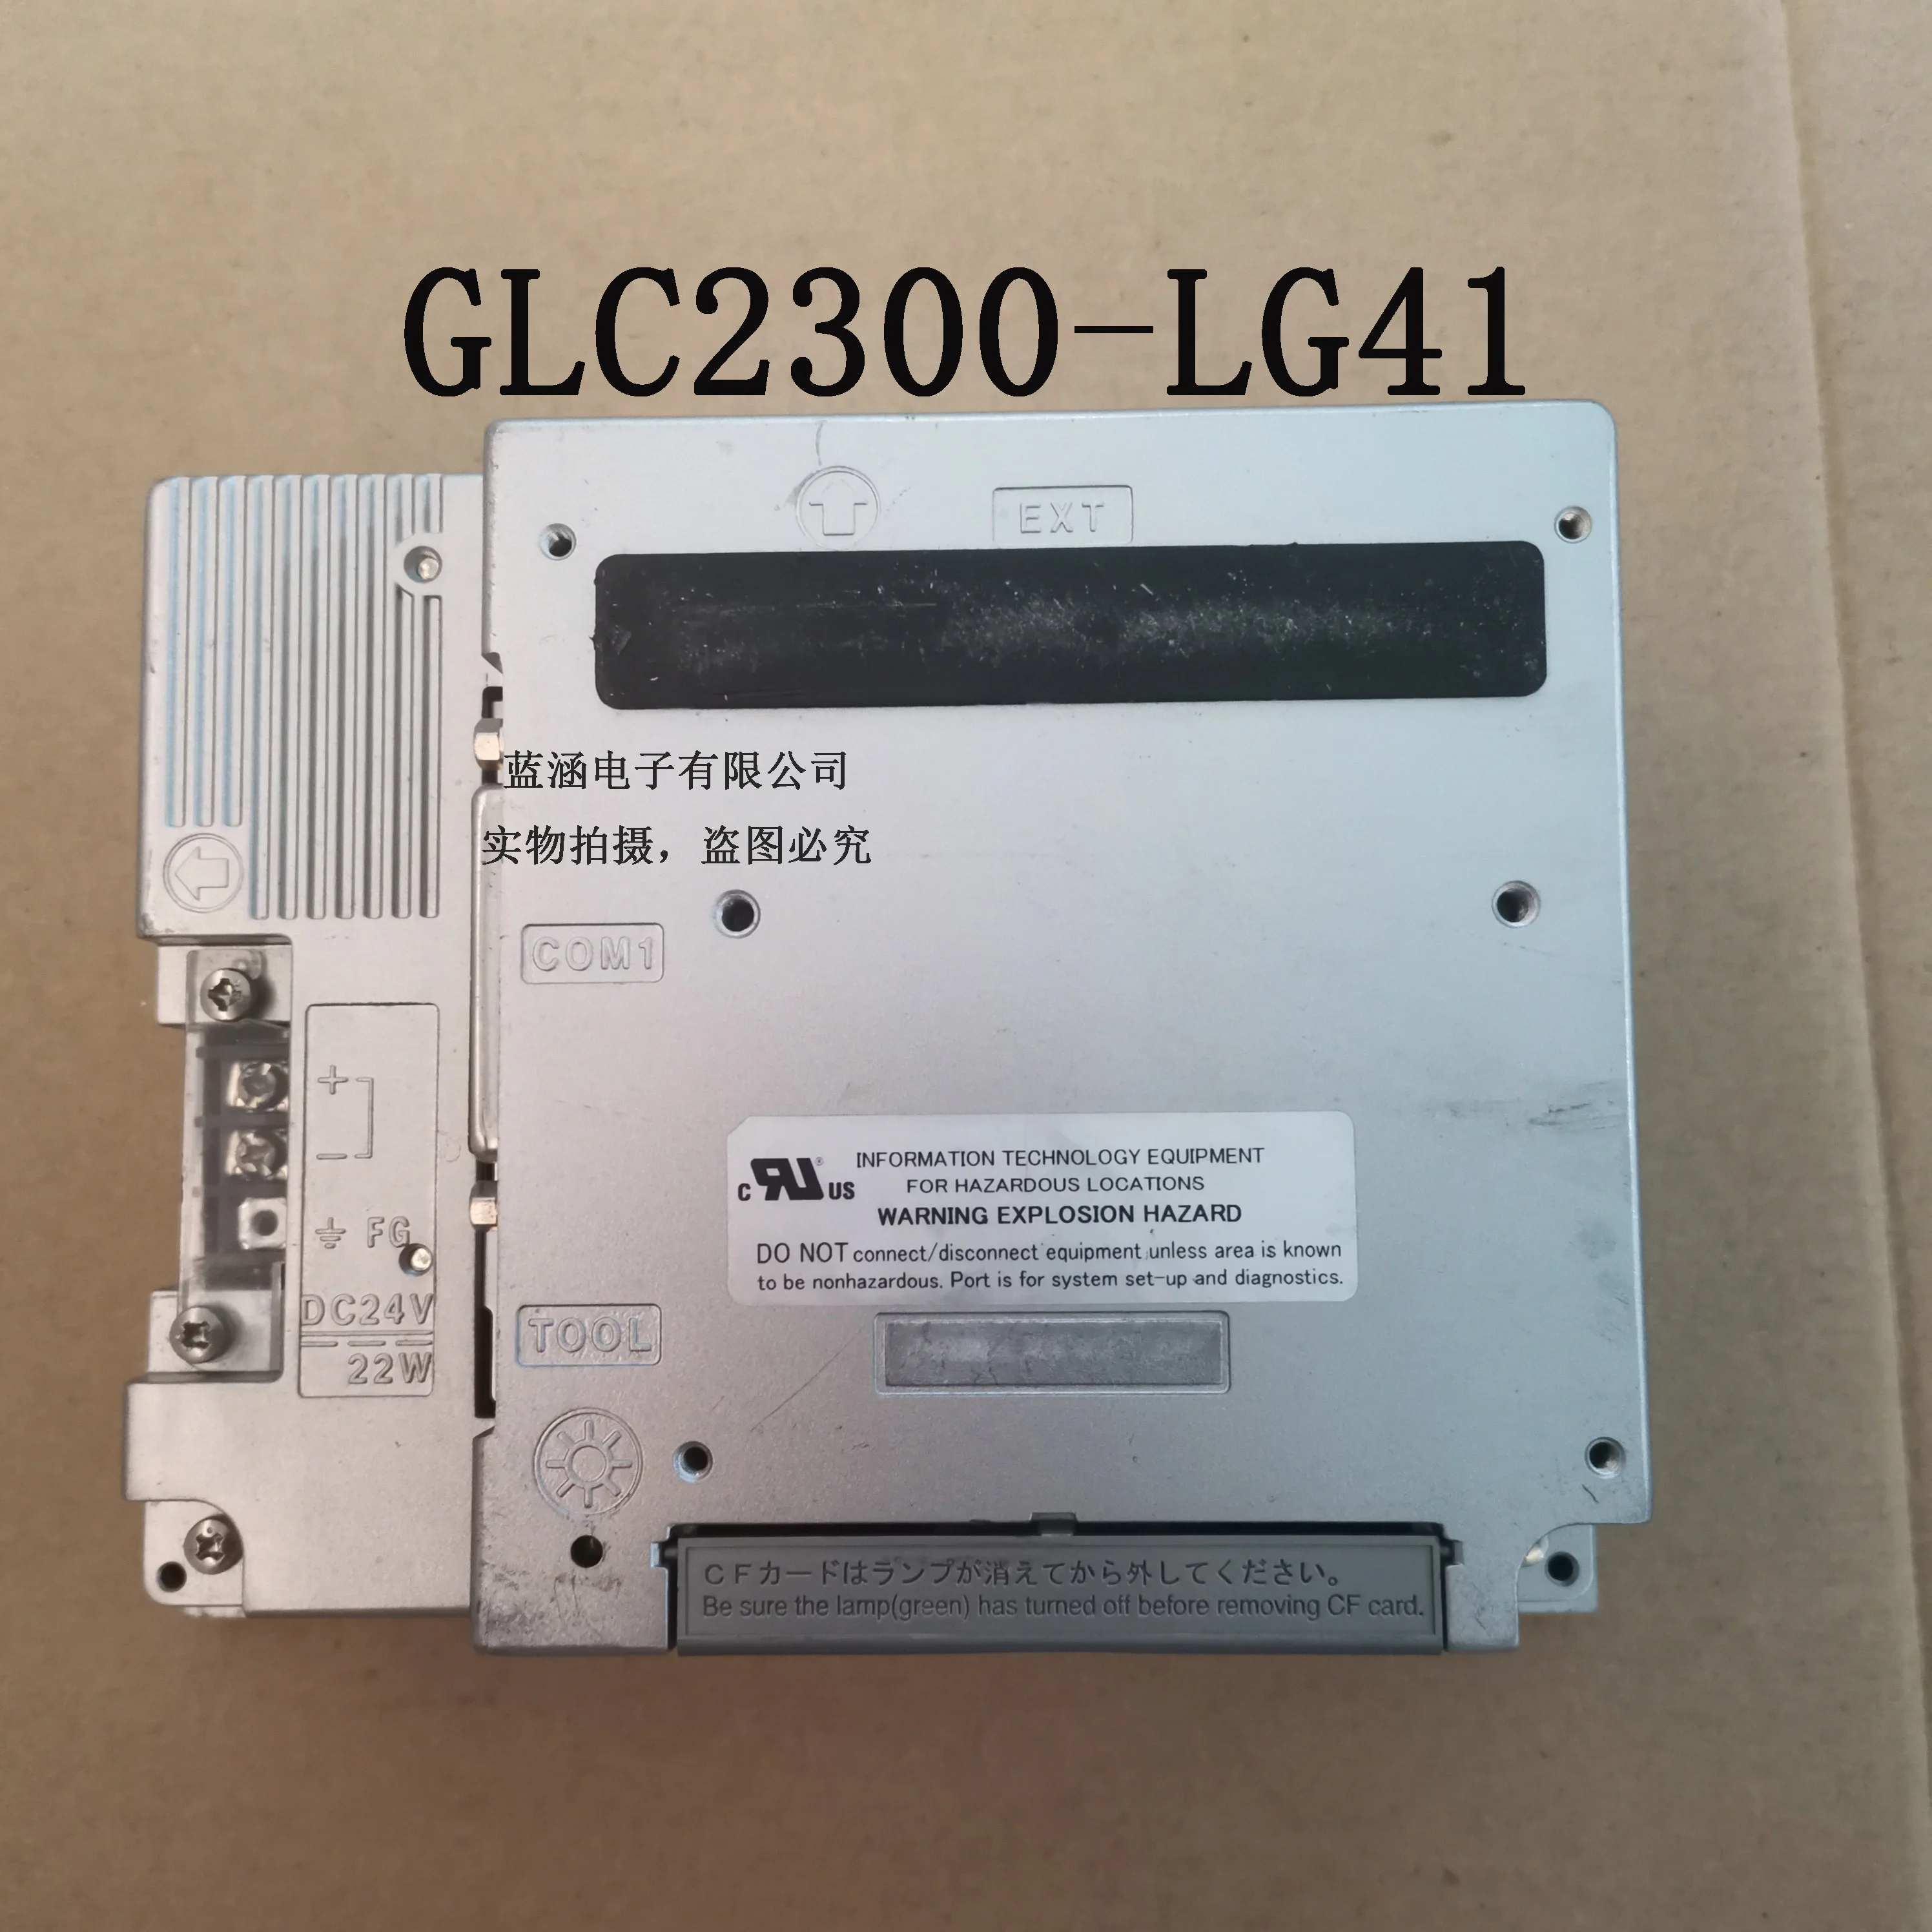 

GLC2300-LG41-24VS-N GLC2300-LG41 LCD display screen